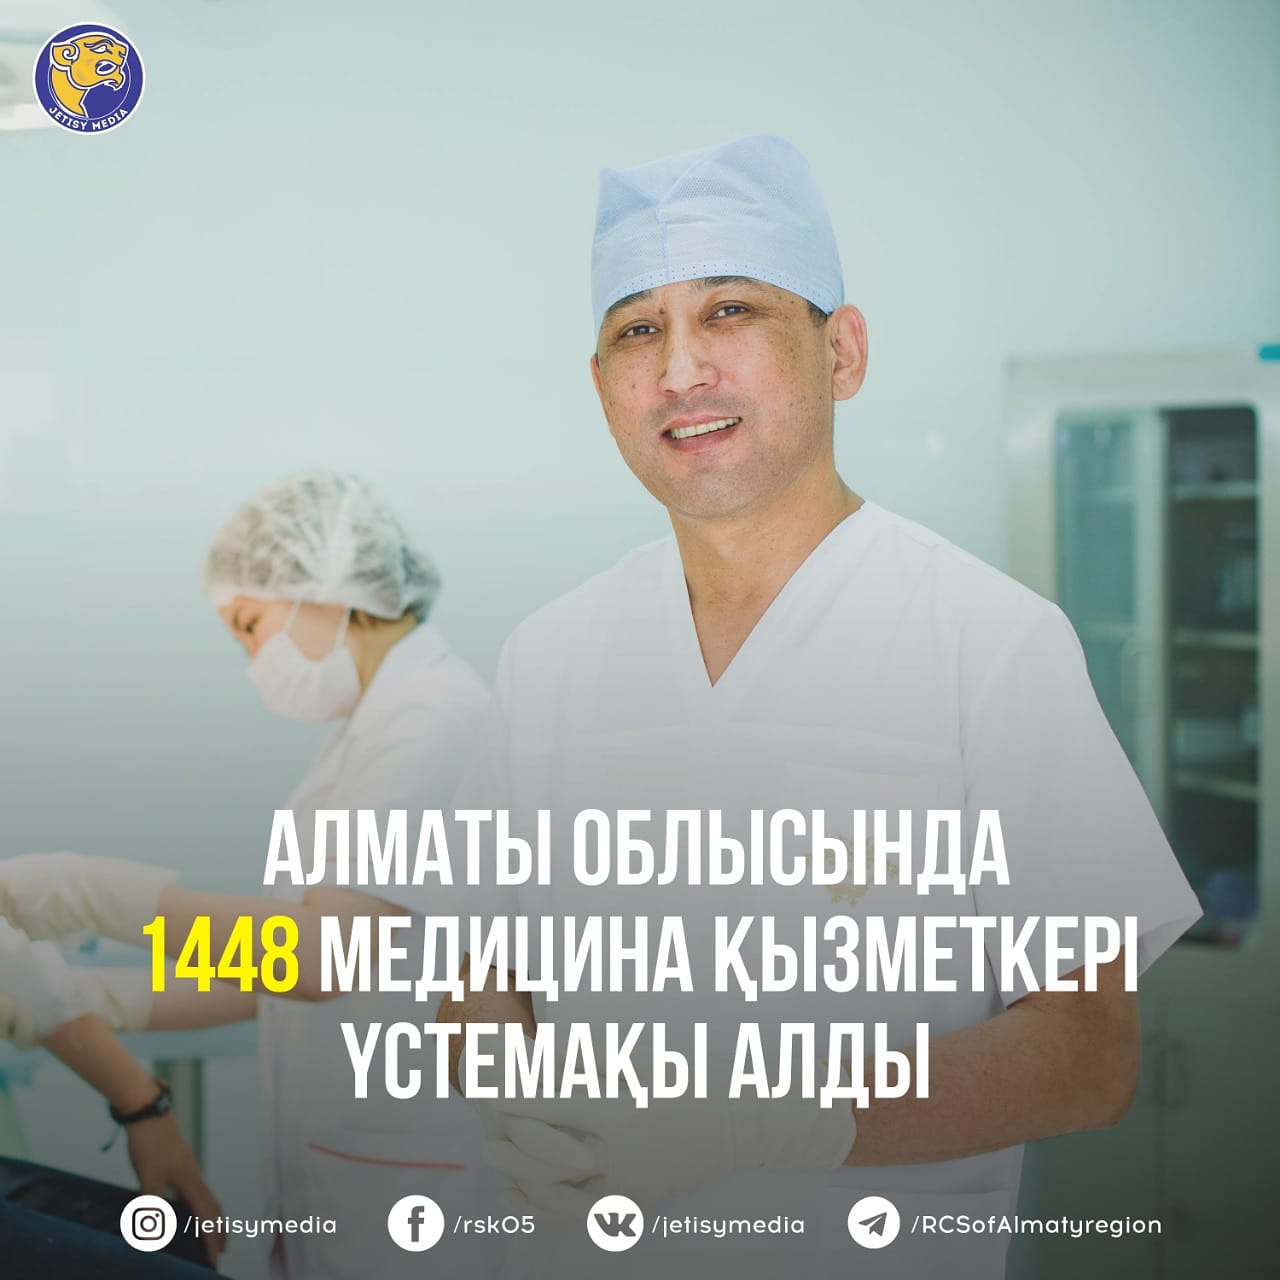 1448 медицинских работников получили надбавку в Алматинской области